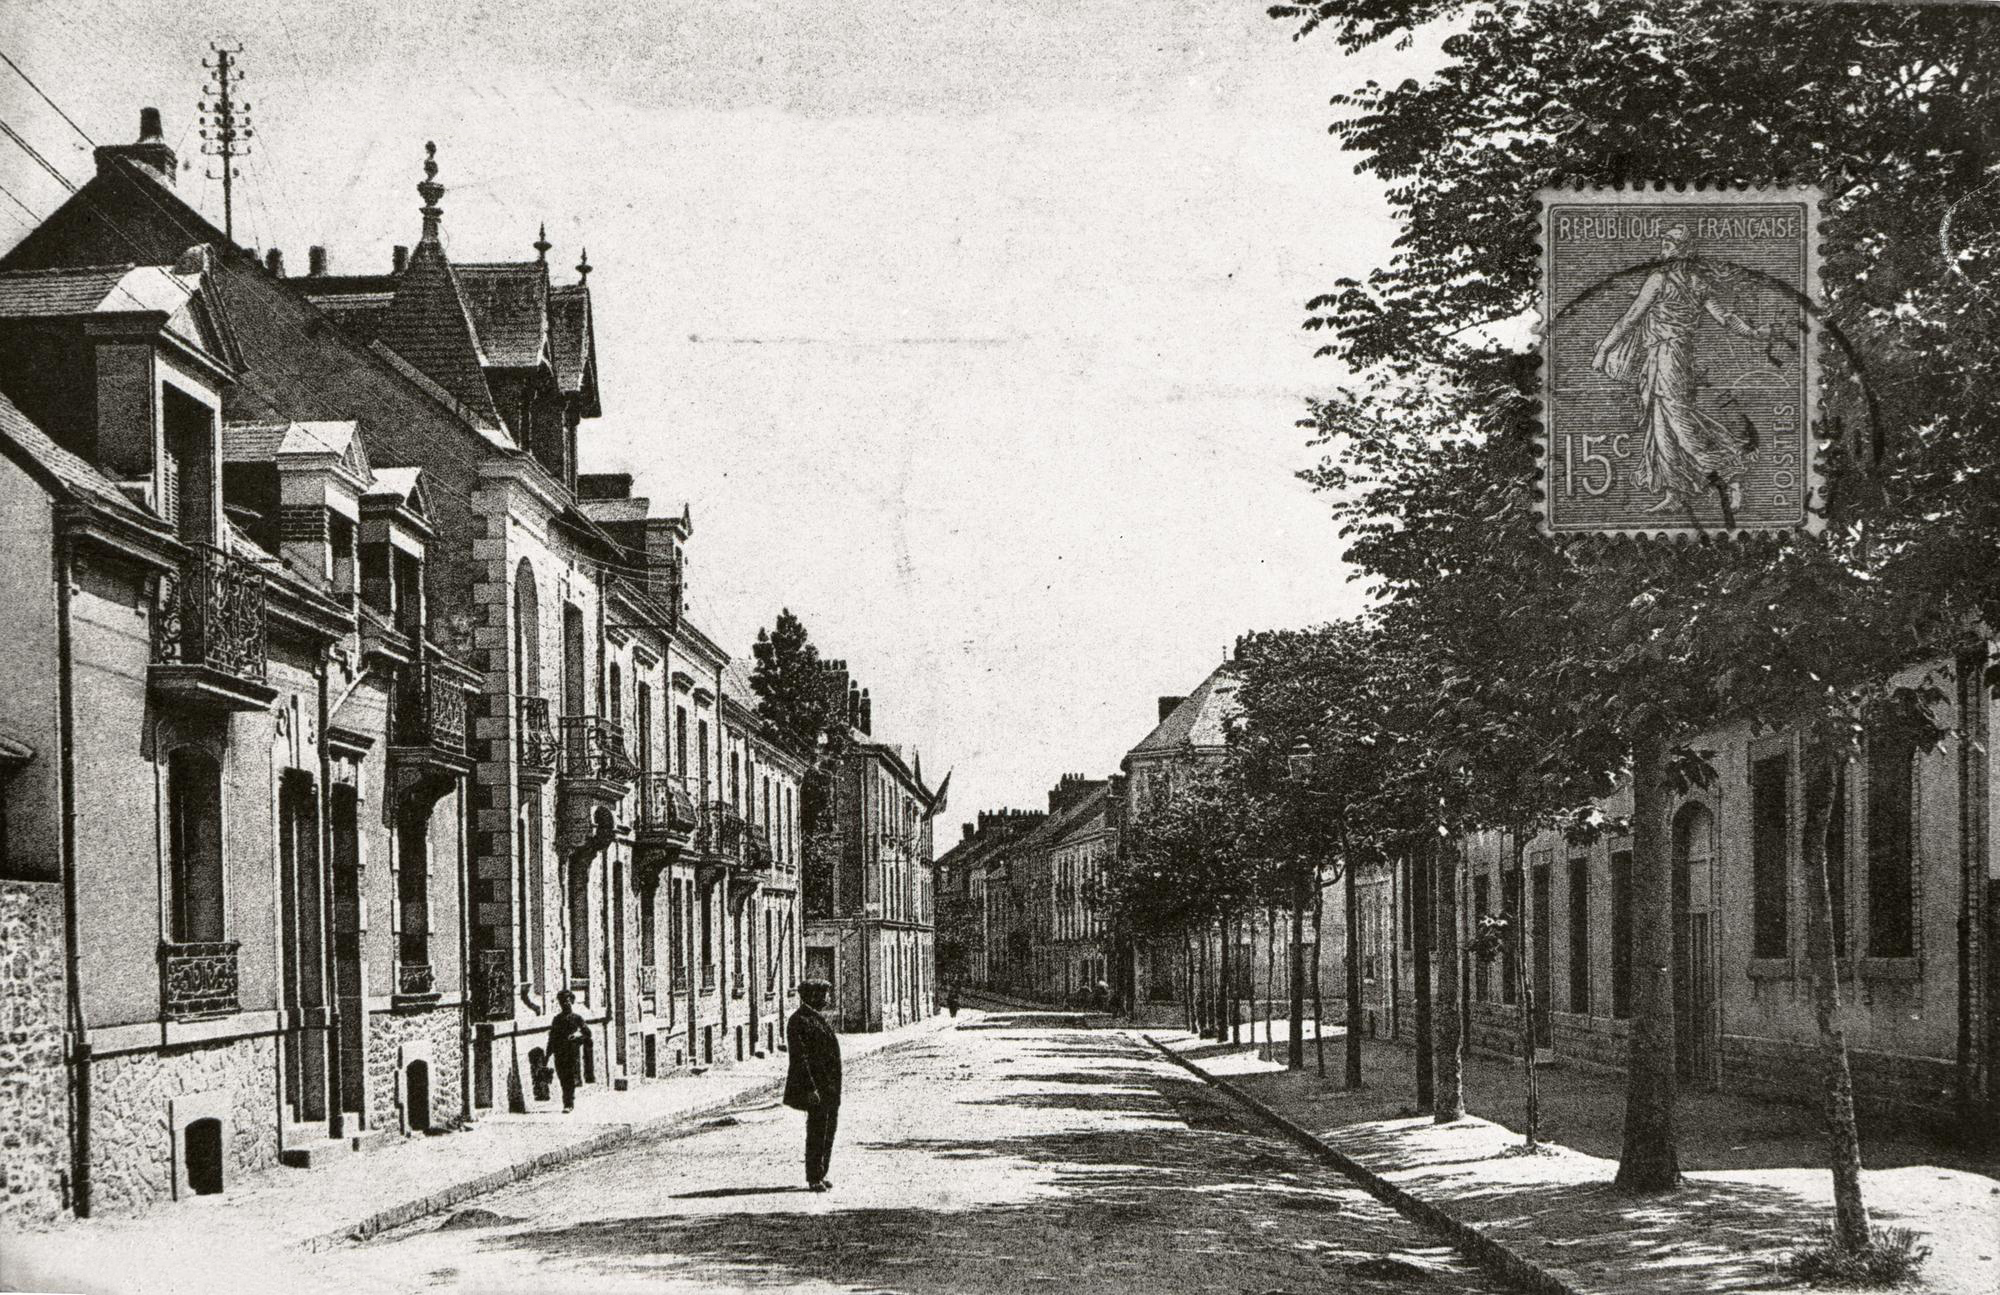 Carte postale en noir et blanc timbrée représentant un homme au milieu d'une rue de Saint-Nazaire vers 1900.